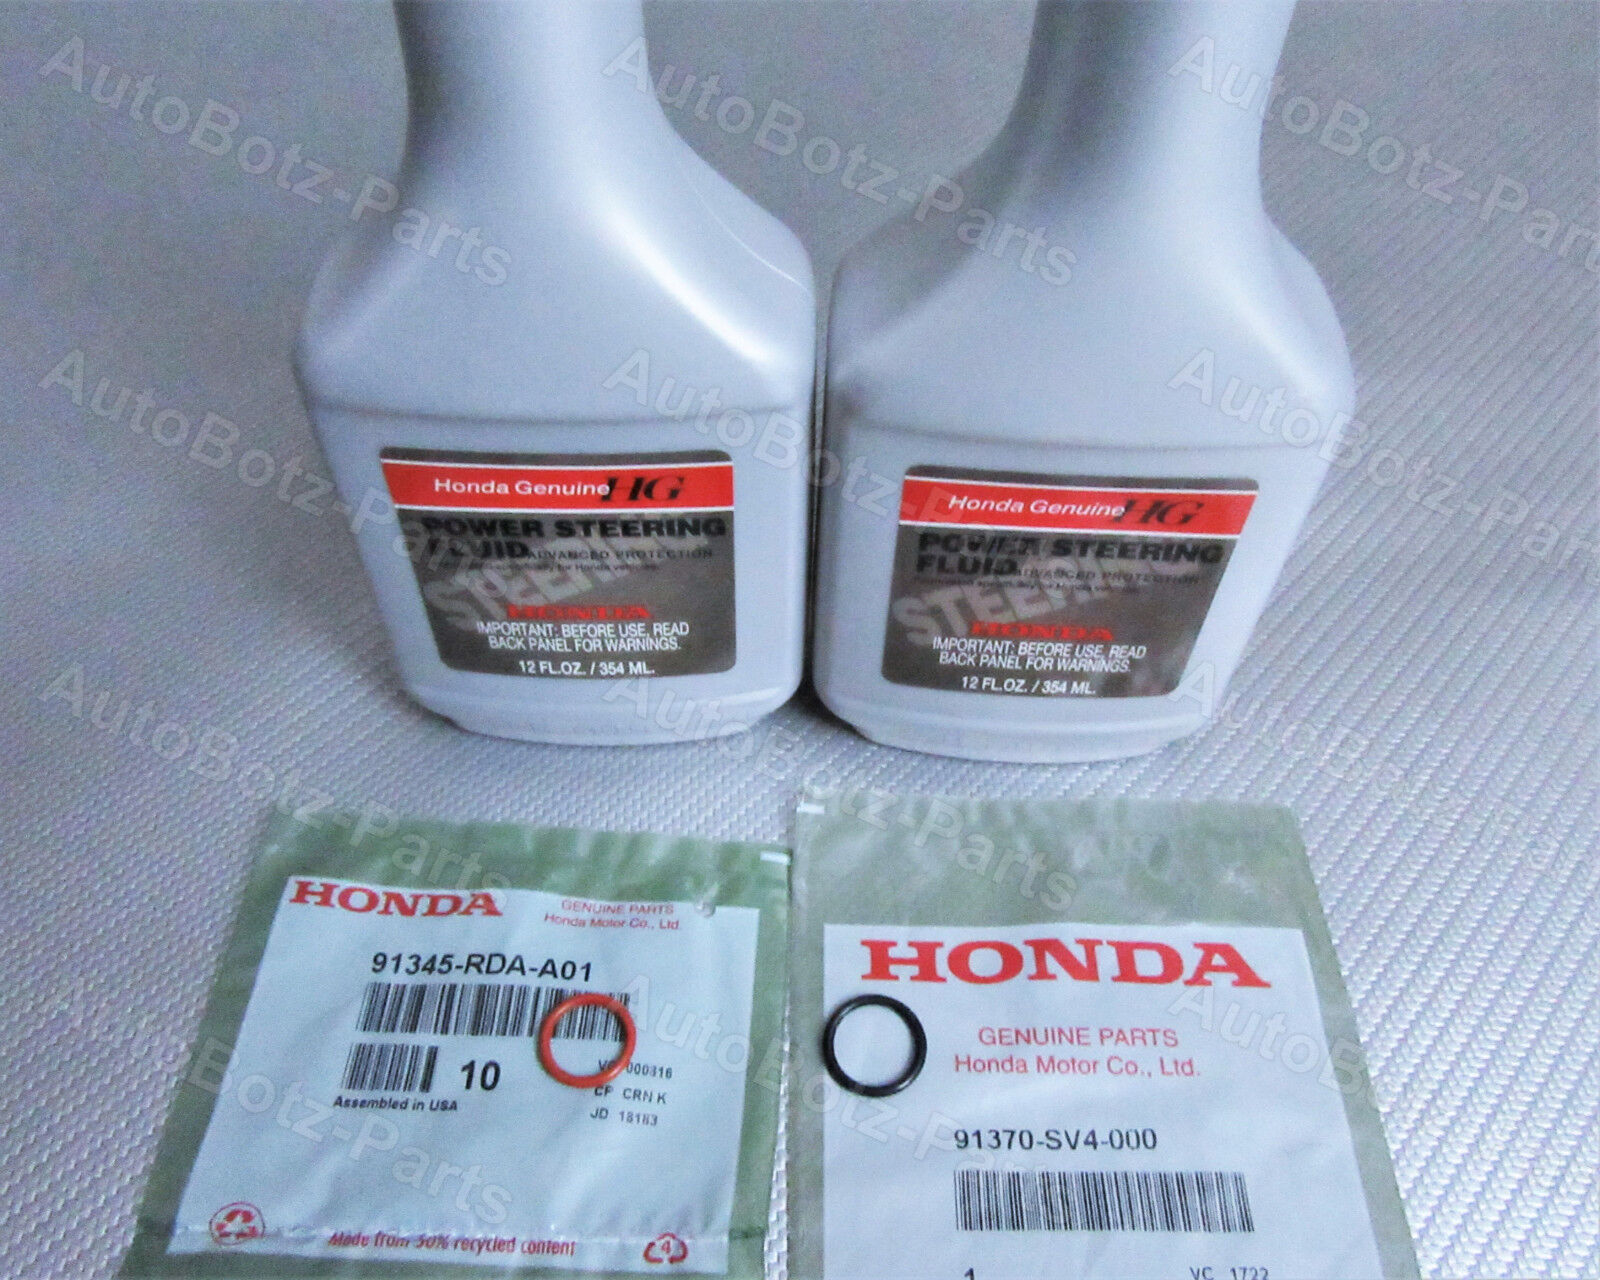 OEM GENUINE HONDA Power Steering Pump Oil O-Ring Seals & Fluid - 4 pc Reseal Kit